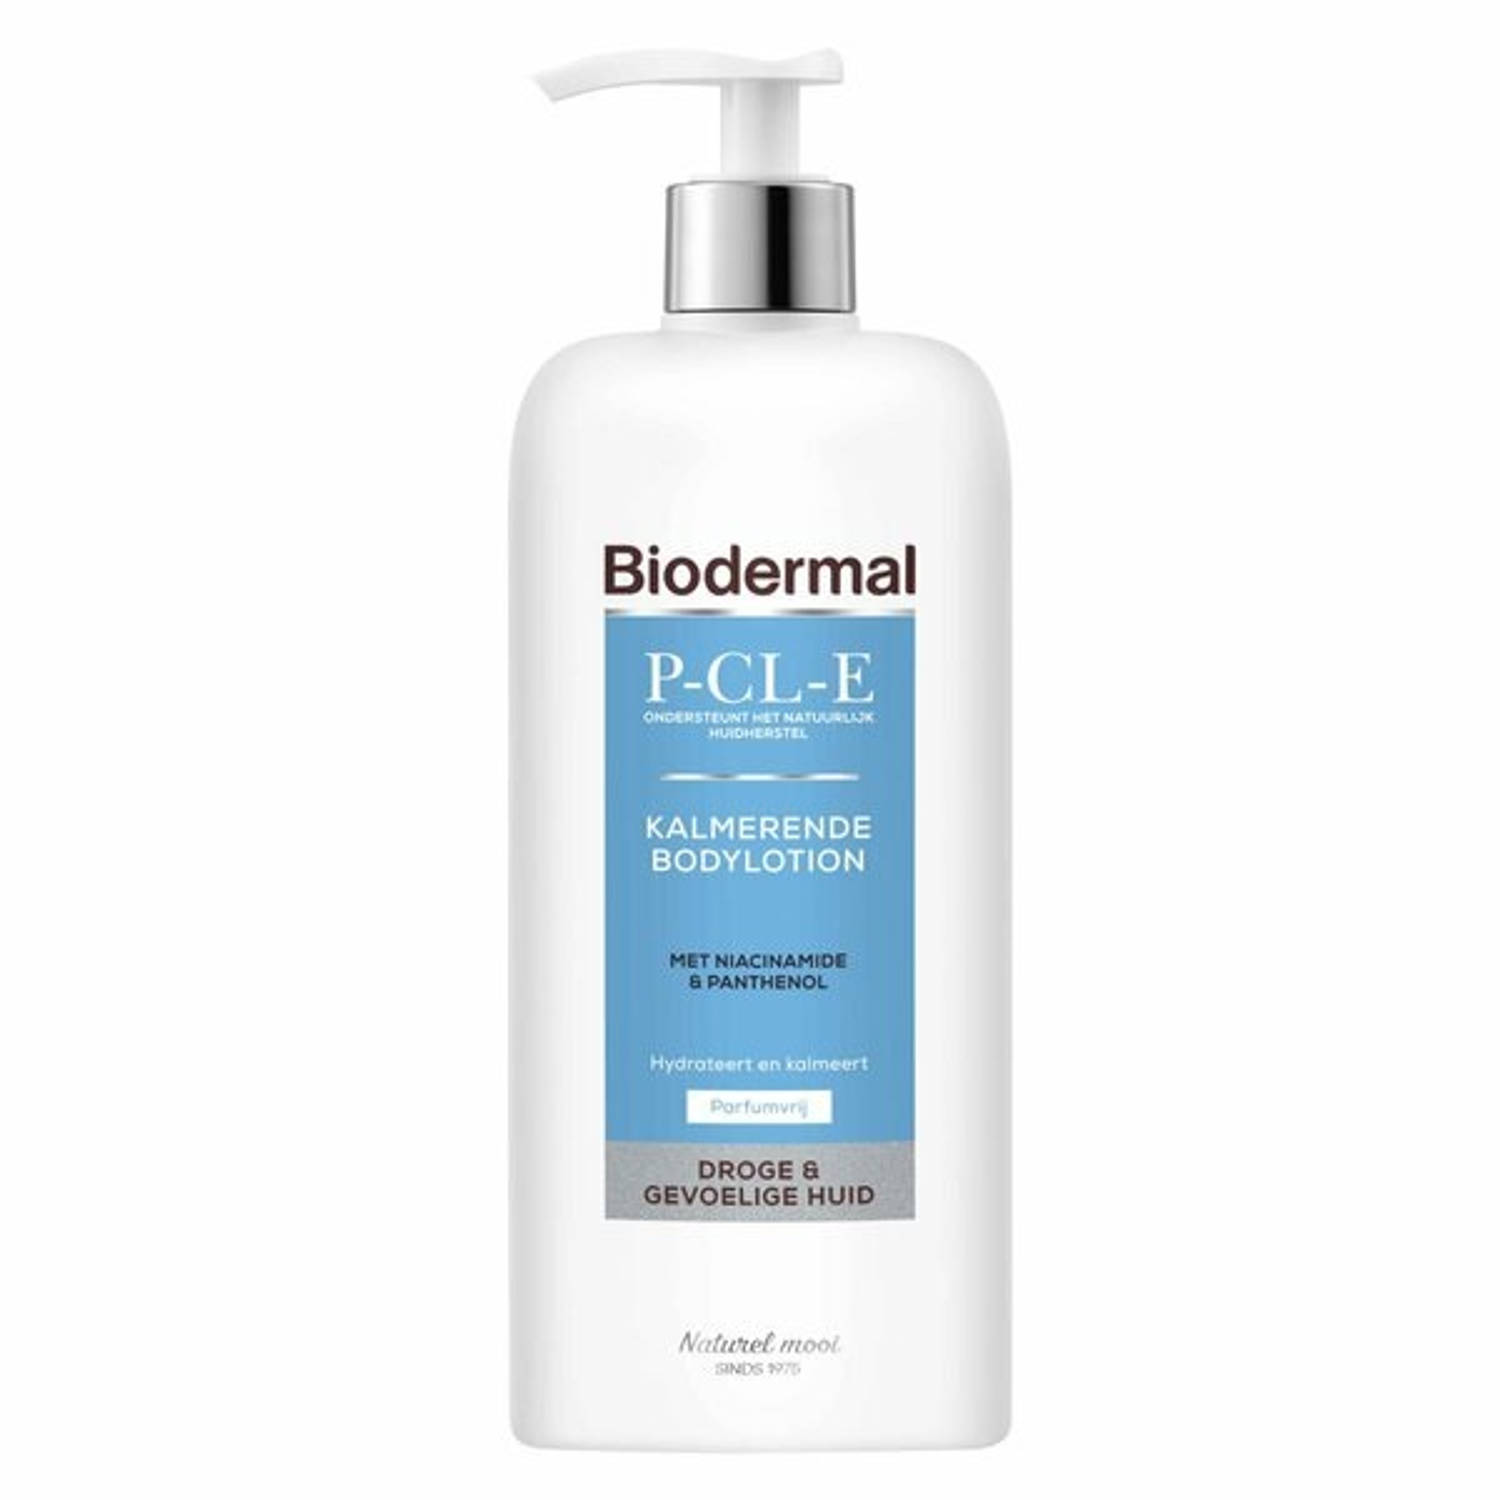 Biodermal P-cl-e Bodylotion Droge-gev Huid Ongeparfumeerd (400ml)